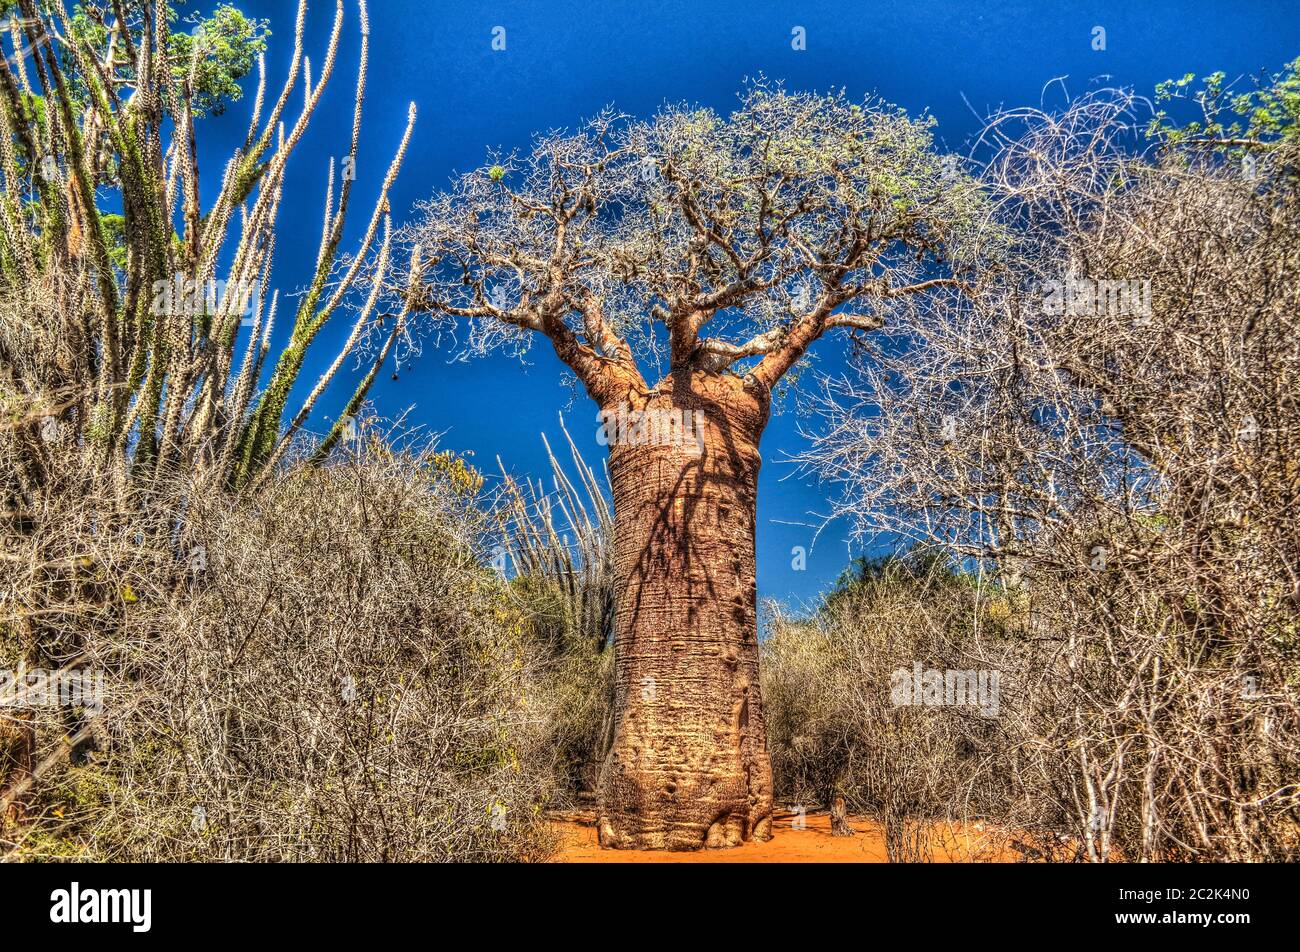 Paysage avec l'Adansonia rubrostipa aka baobab fieux dans la réserve de Reniala , Toliara, Madagascar Banque D'Images